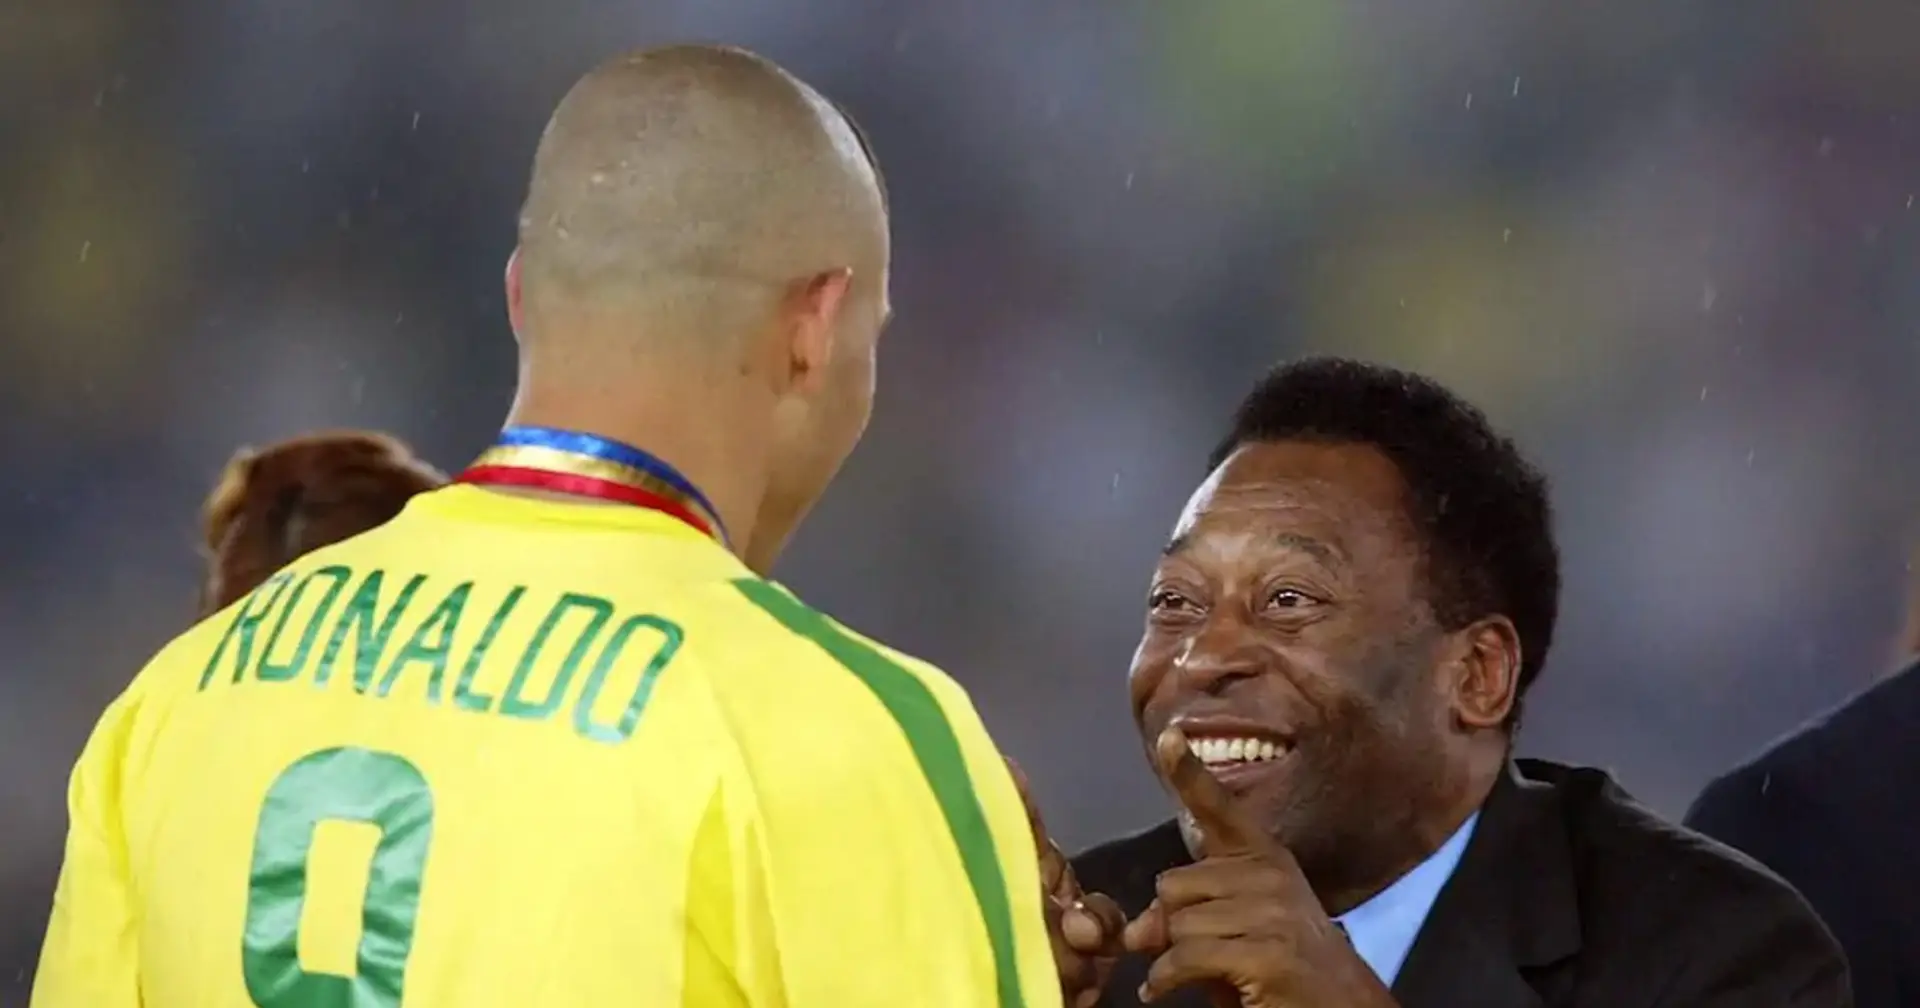 "Sentirmi chiamare suo erede l'orgoglio più grande": Ronaldo saluta commosso Pelé svelando un aneddoto straordinario